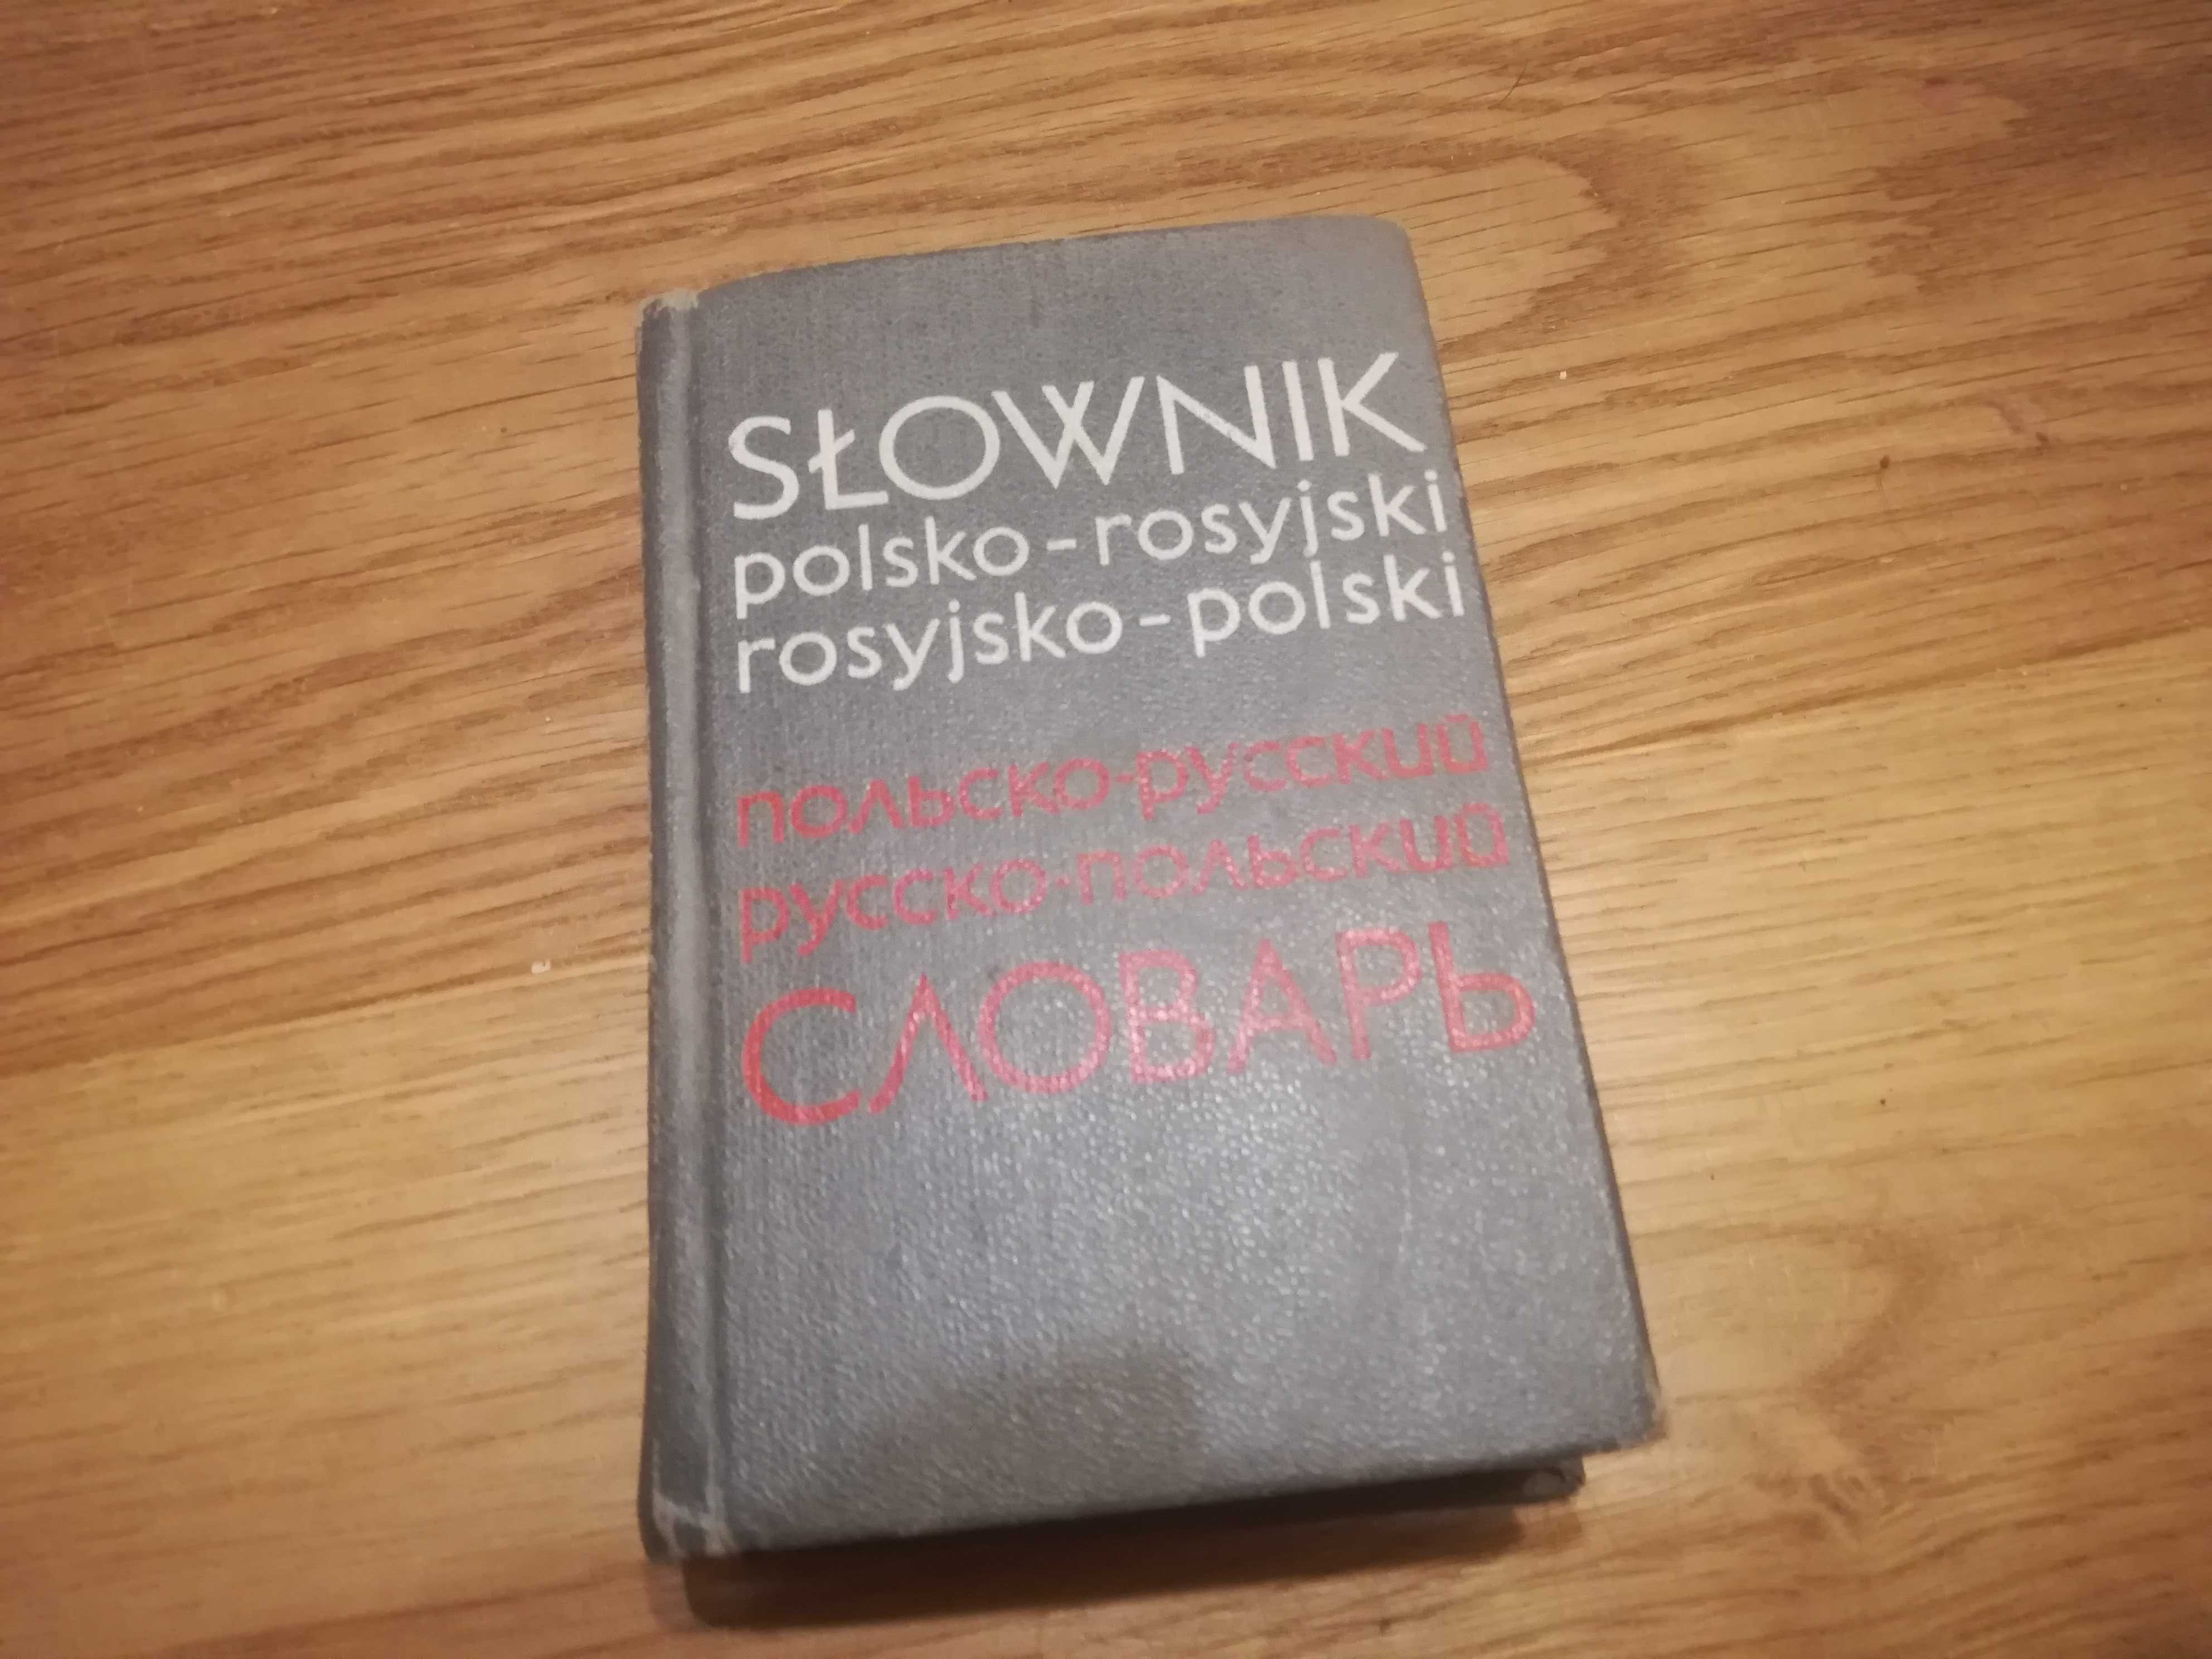 Podręczny Słownik polsko-rosyjski, rosyjsko-polski